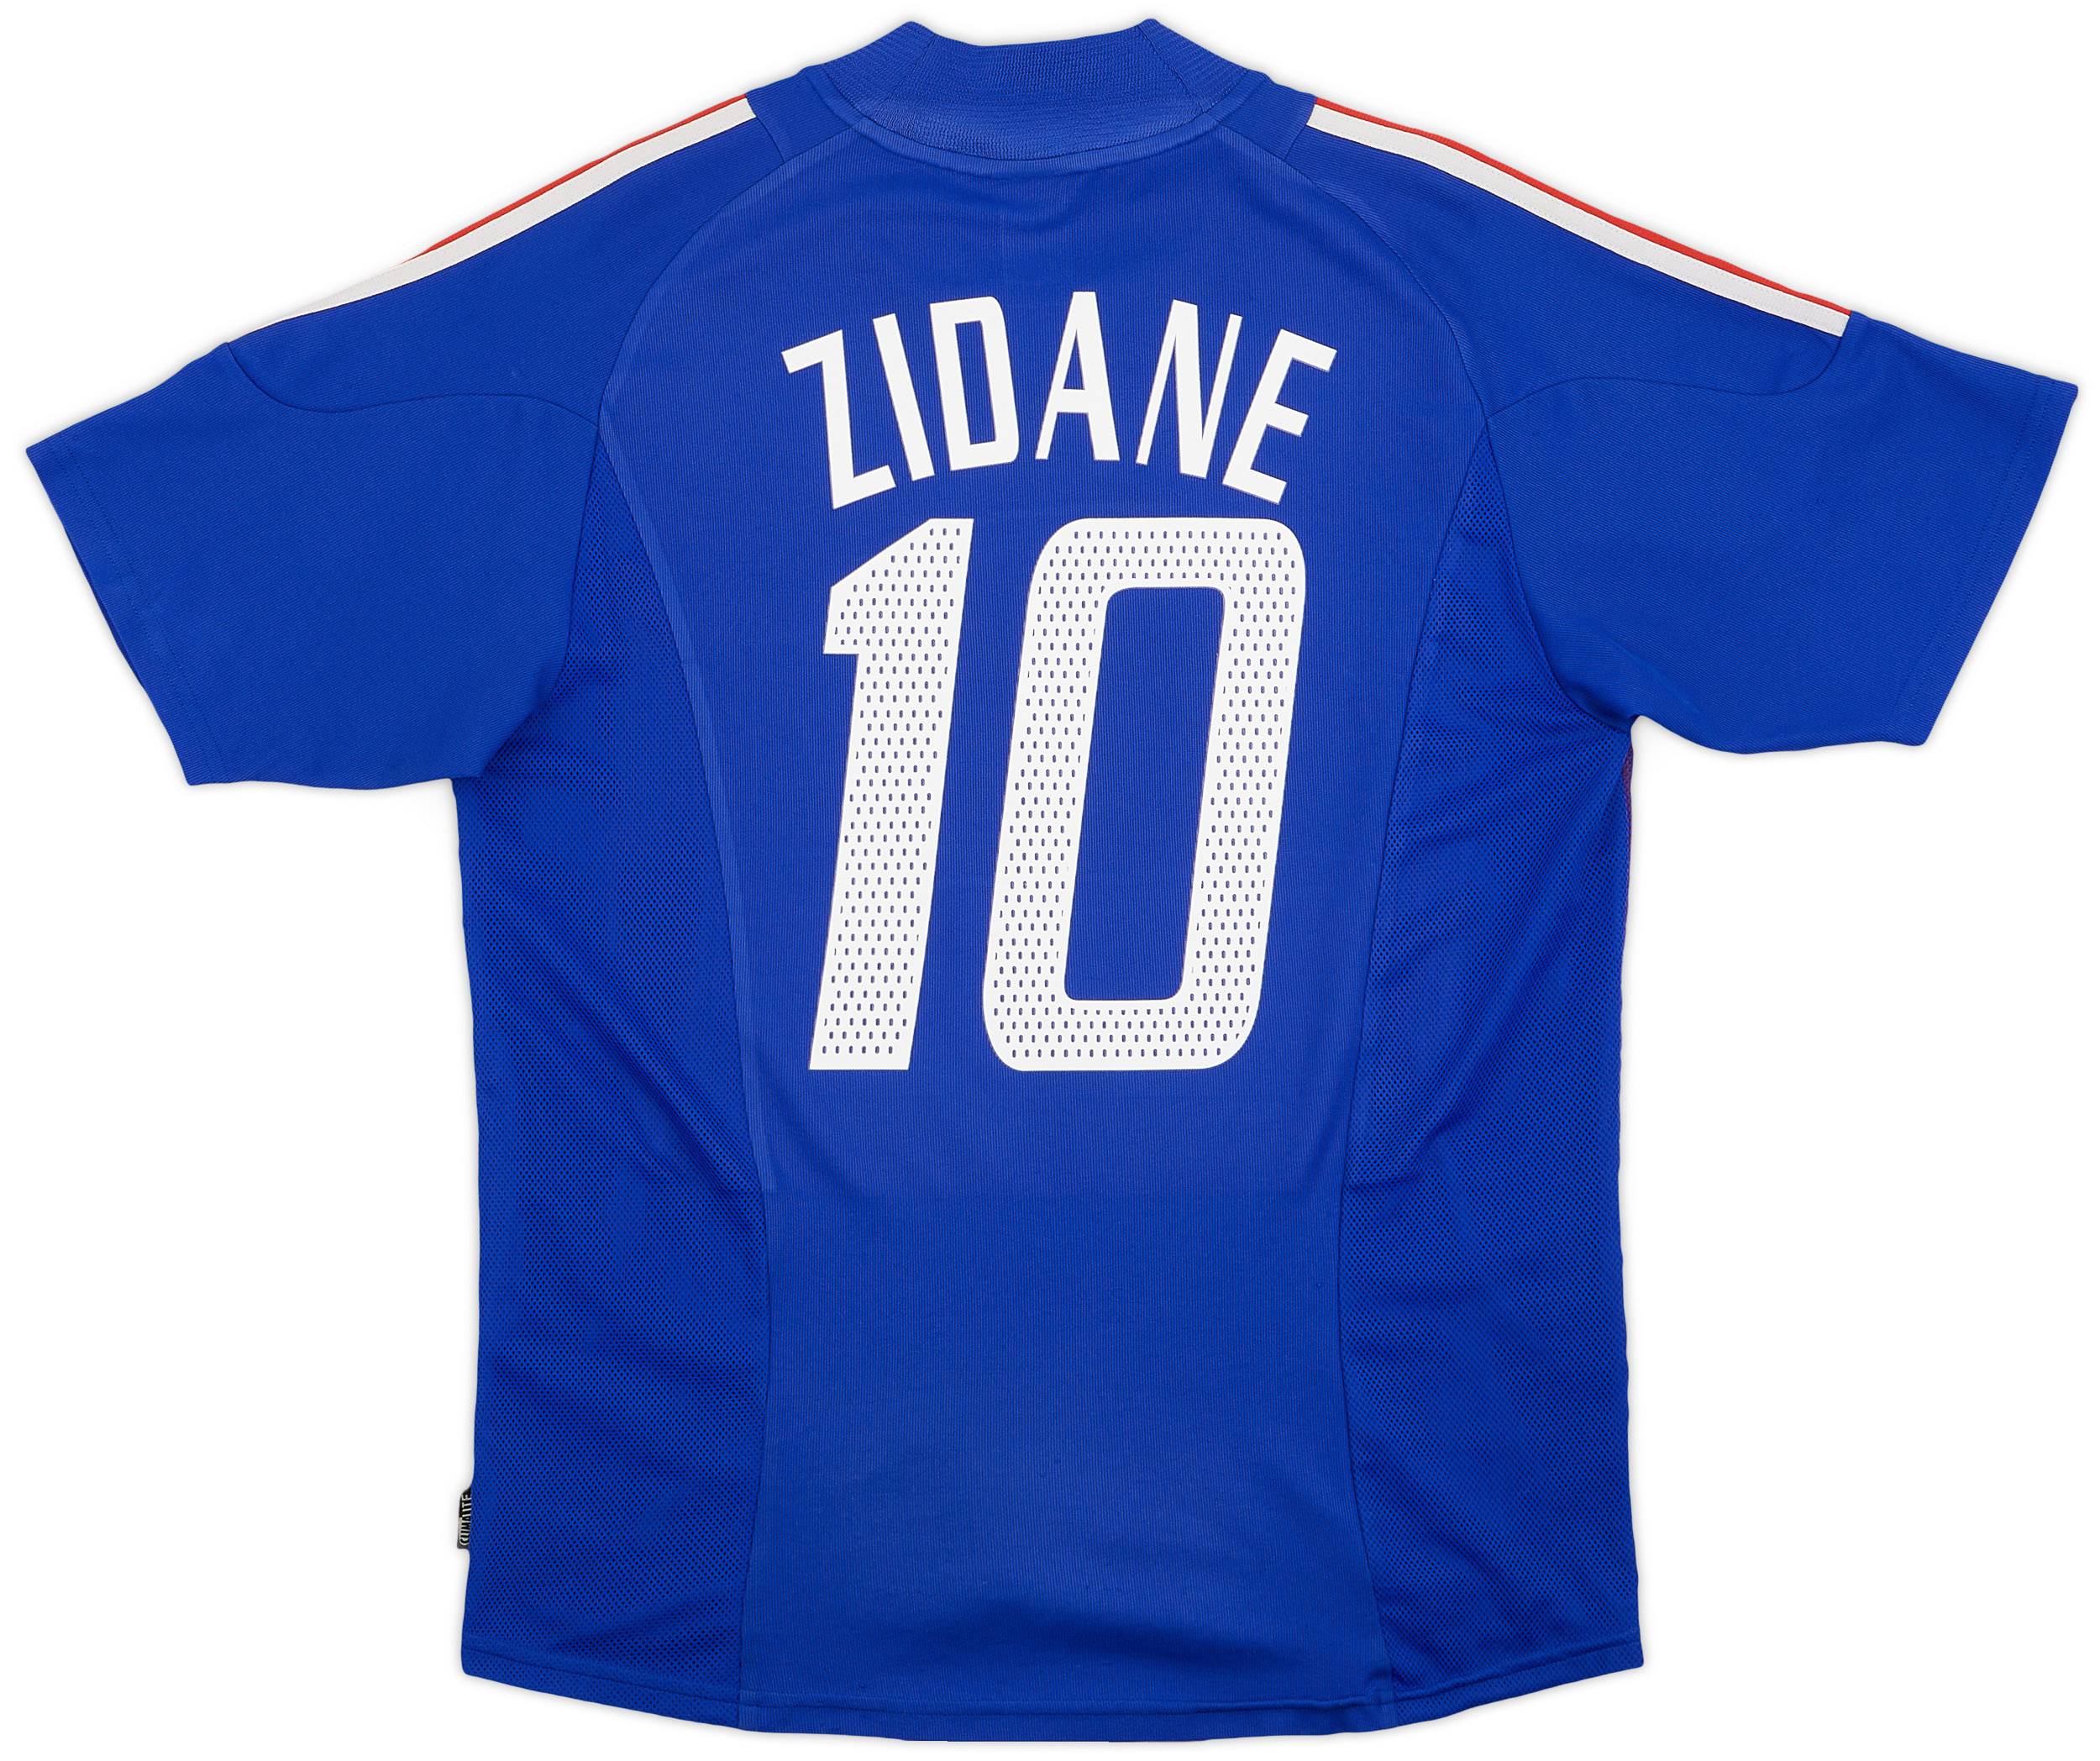 2002-04 France Home Shirt Zidane #10 - 5/10 - (M)